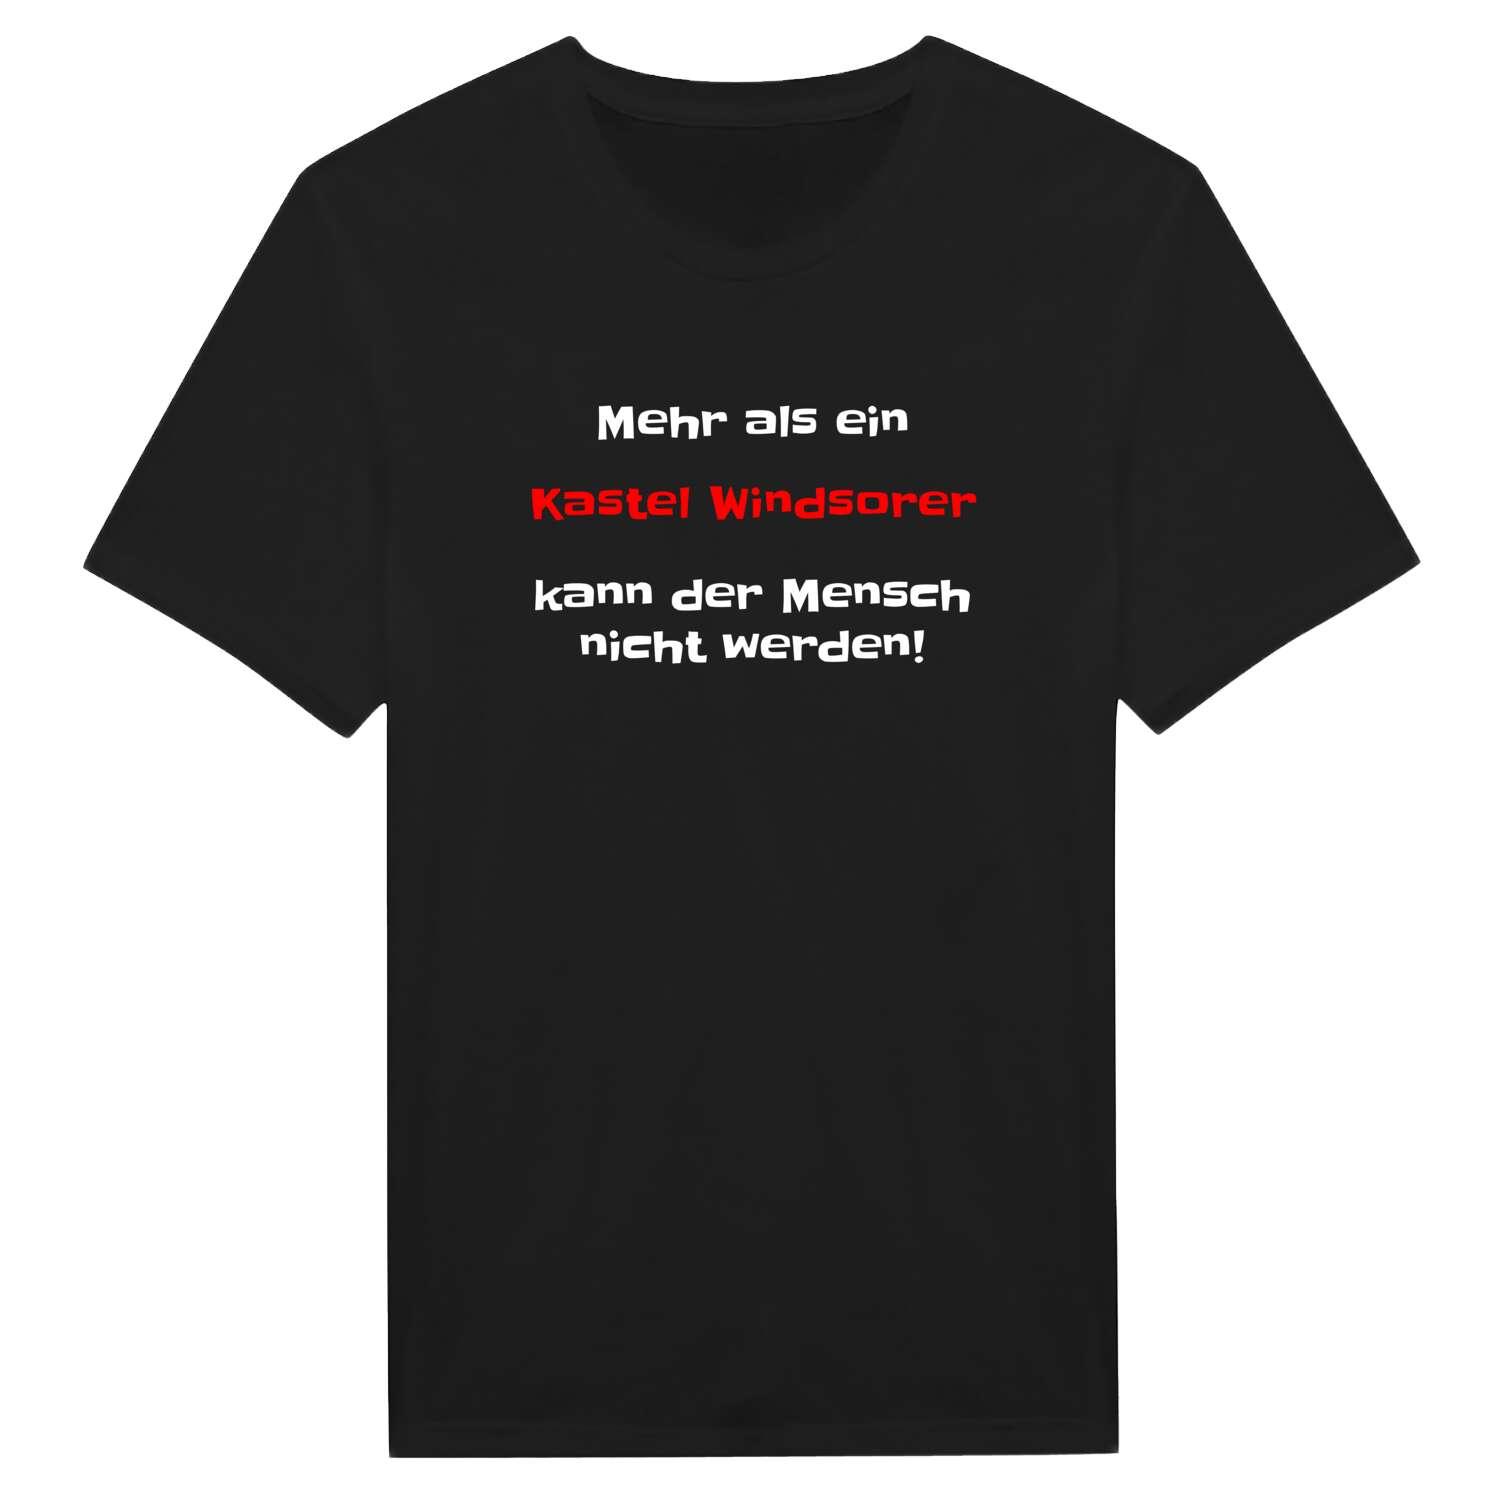 Kastel Windsor T-Shirt »Mehr als ein«